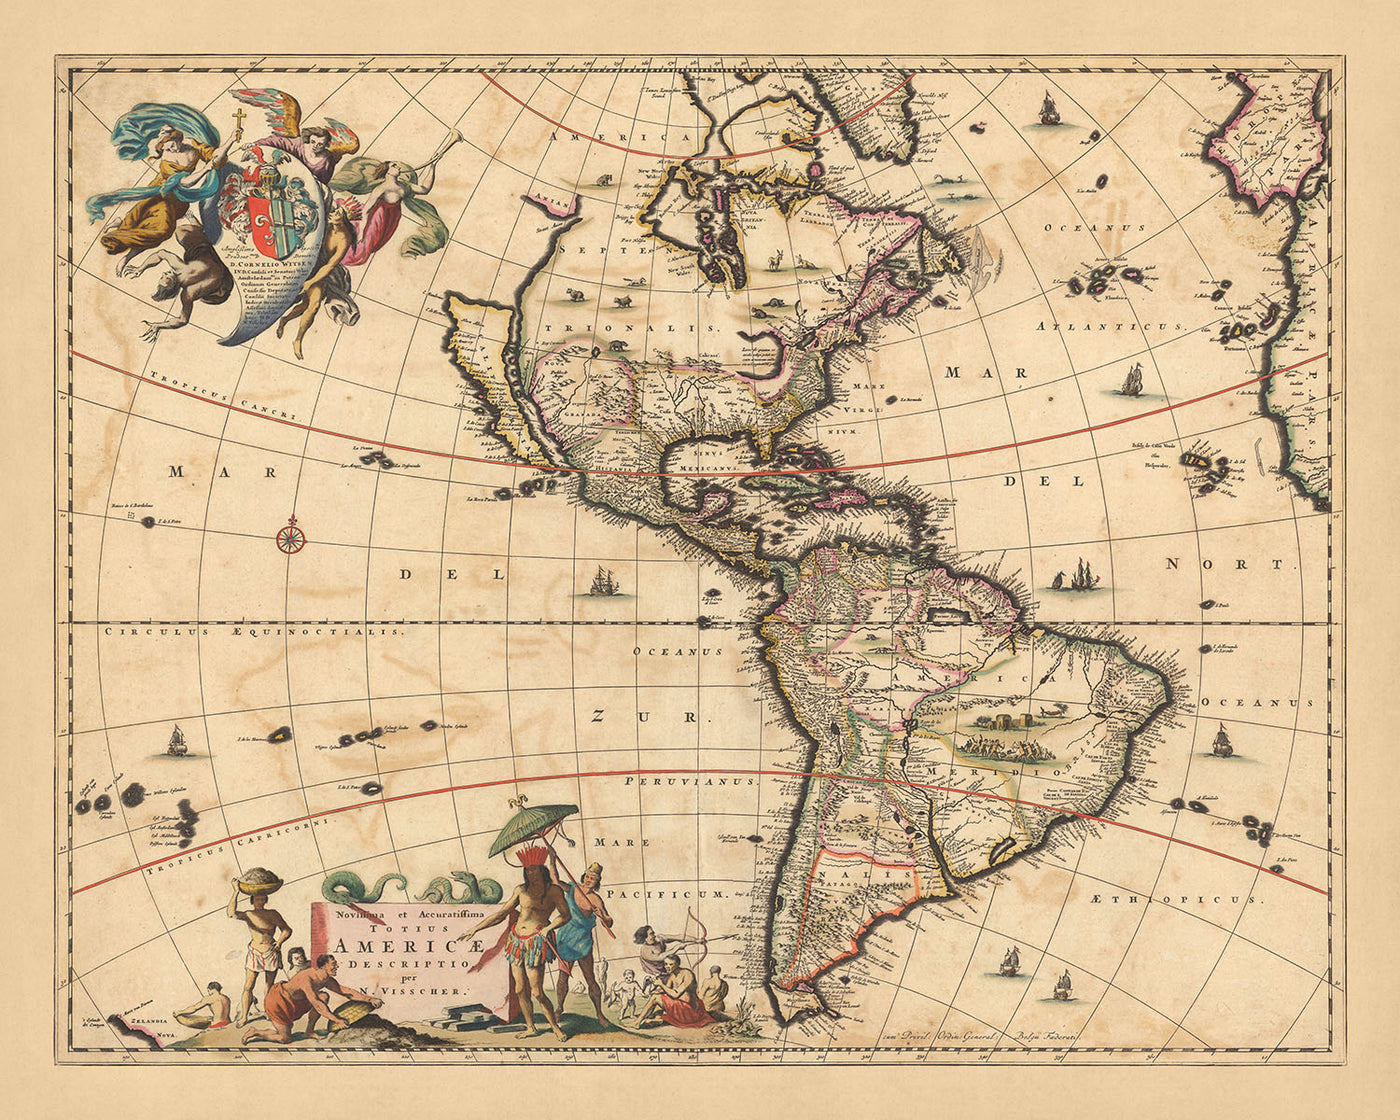 Alte Karte von Amerika von Visscher, 1690: Mittelamerika, Karibik, Polynesien, Atlantikinseln, Amazonas-Regenwald